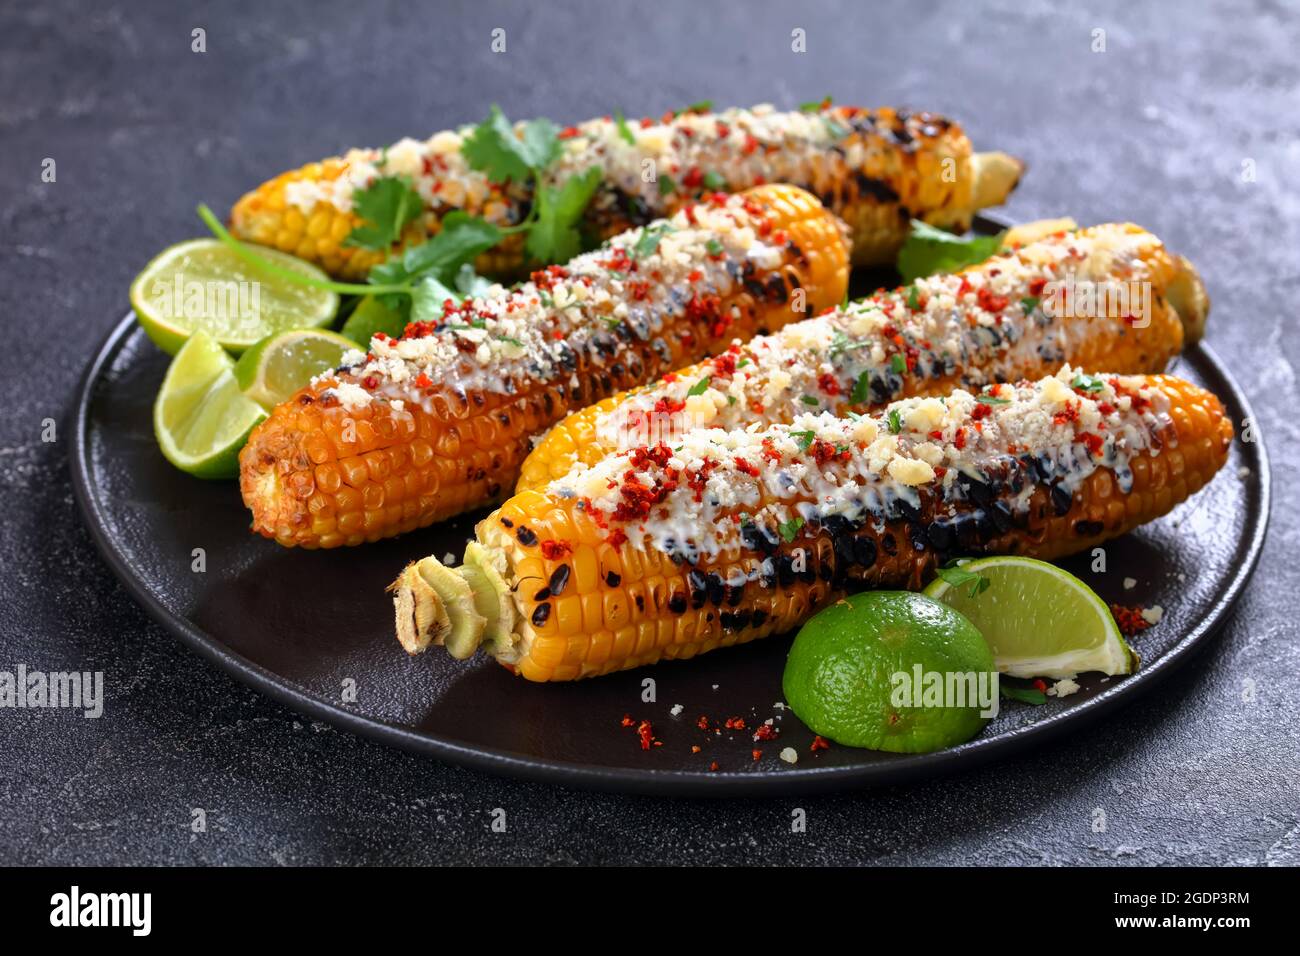 Elote maíz de calle mexicano a la parrilla mazorcas carbonizadas son semplumadas en salsa a